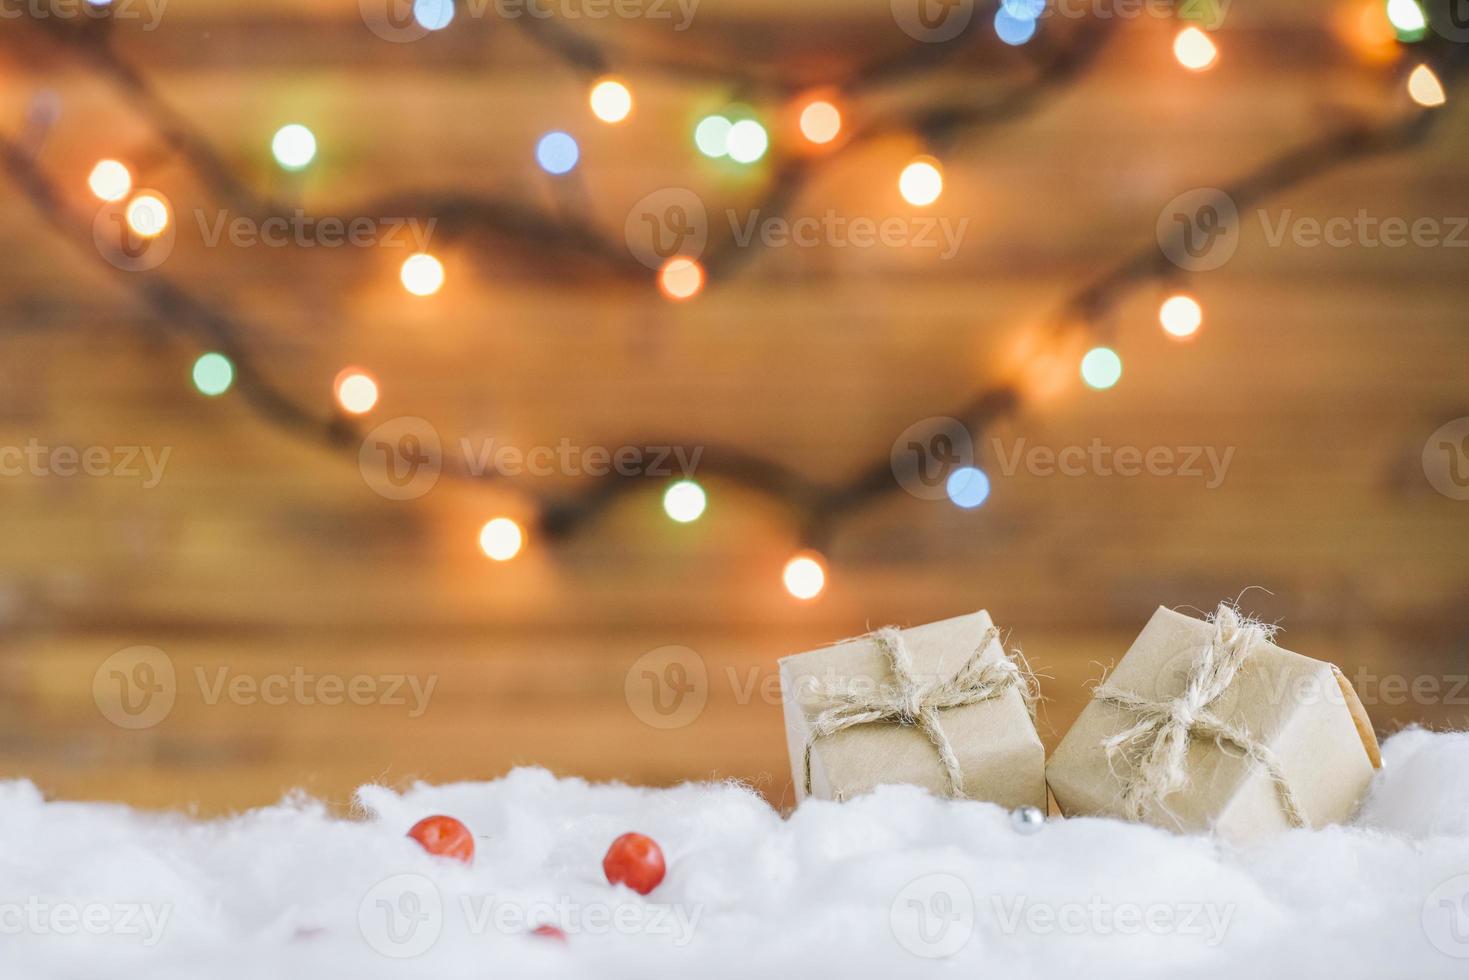 apresentar caixas na neve decorativa perto de luzes de fadas foto